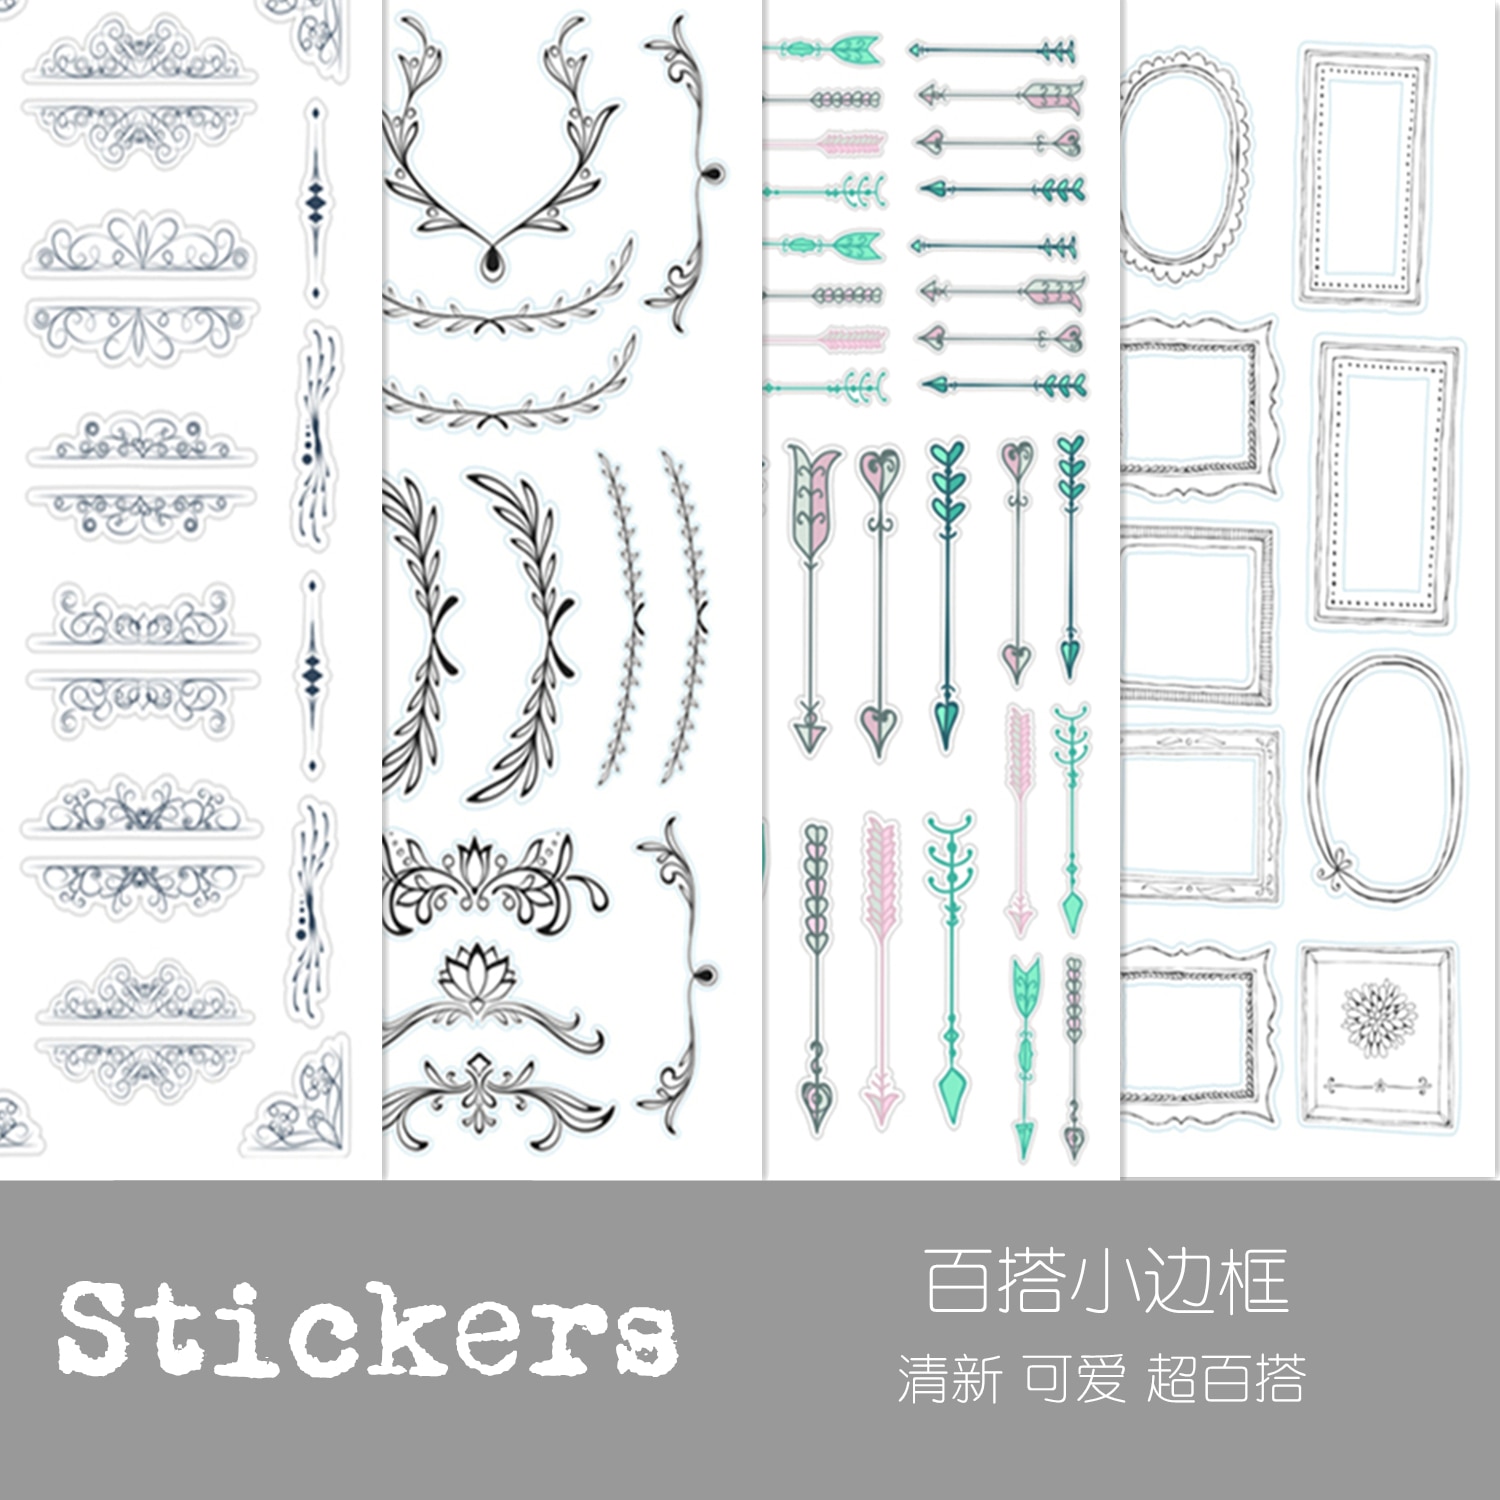 4 Stks/pak Vintage Eenvoudige Lijn Grens Pijl Sticker Diy Craft Scrapbooking Album Junk Journal Planner Decoratieve Stickers